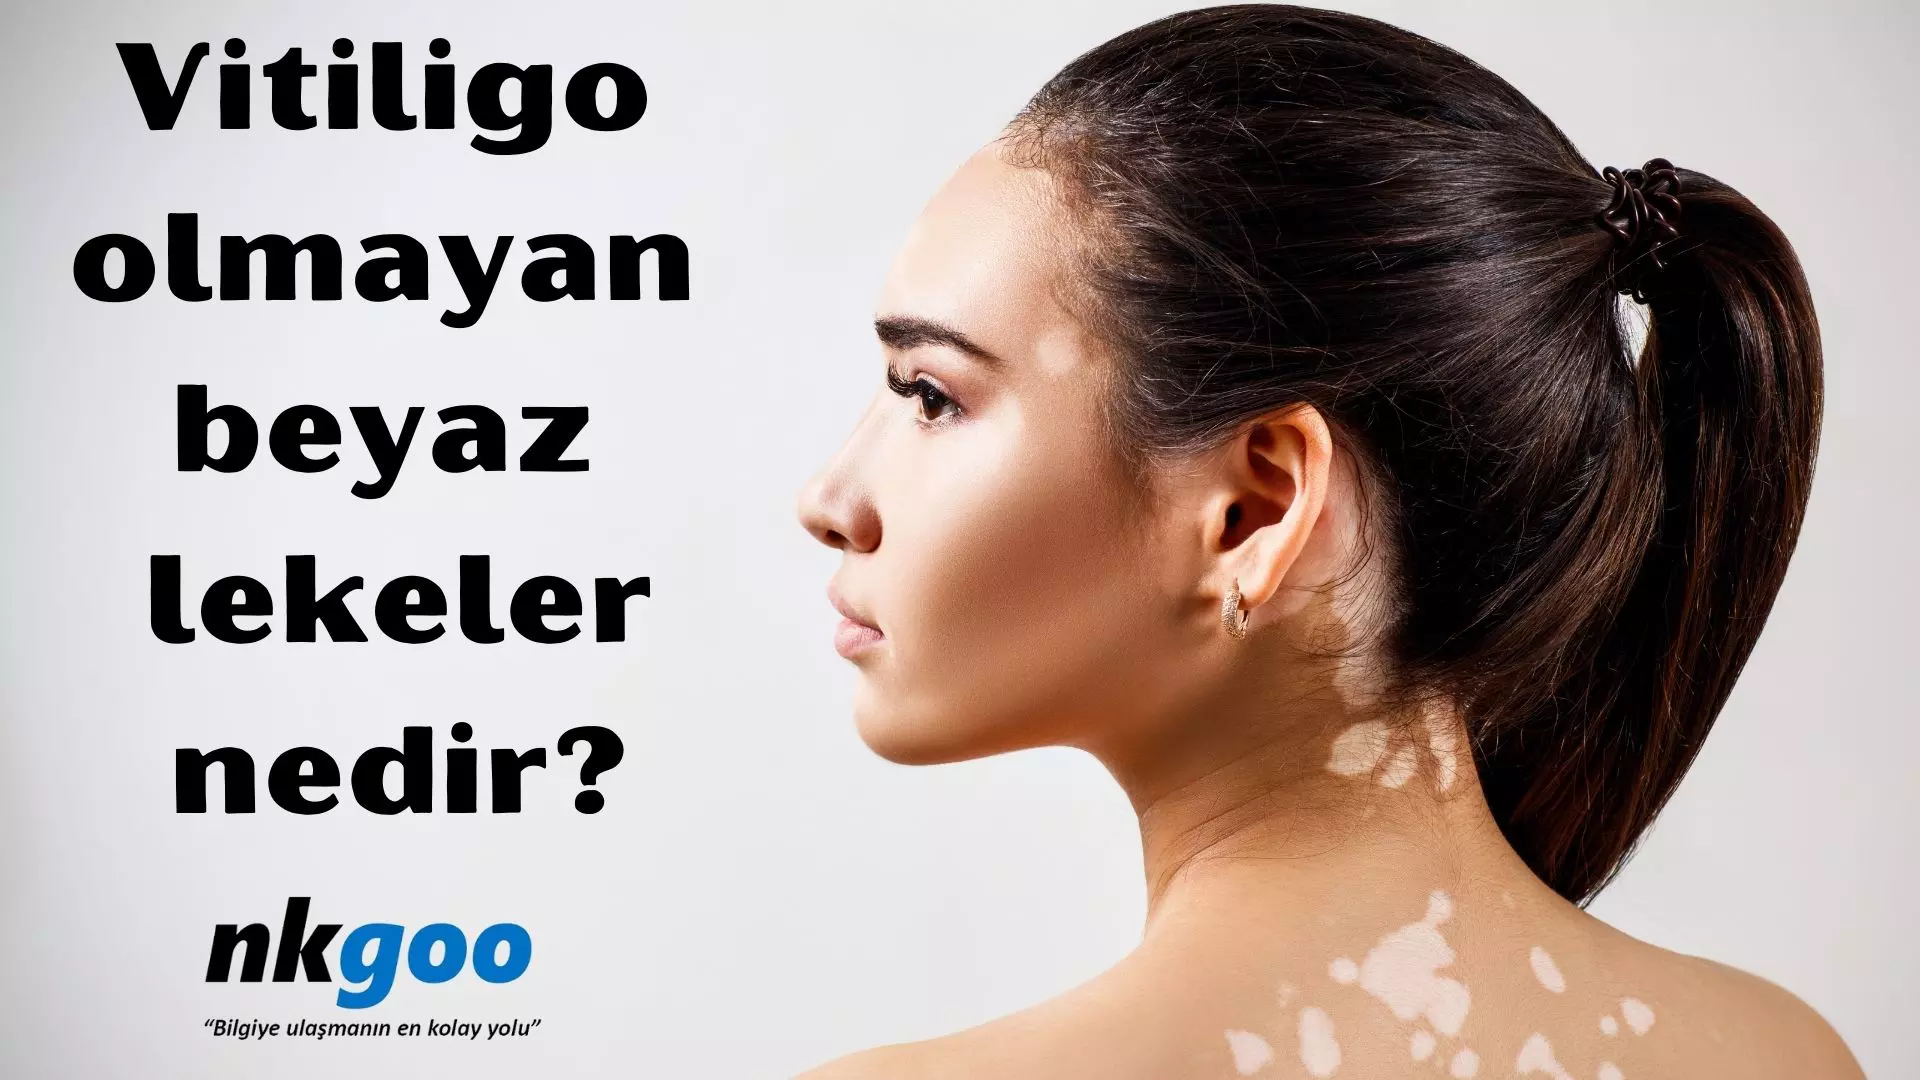 Vitiligo olmayan beyaz lekeler nedir? Sebebi